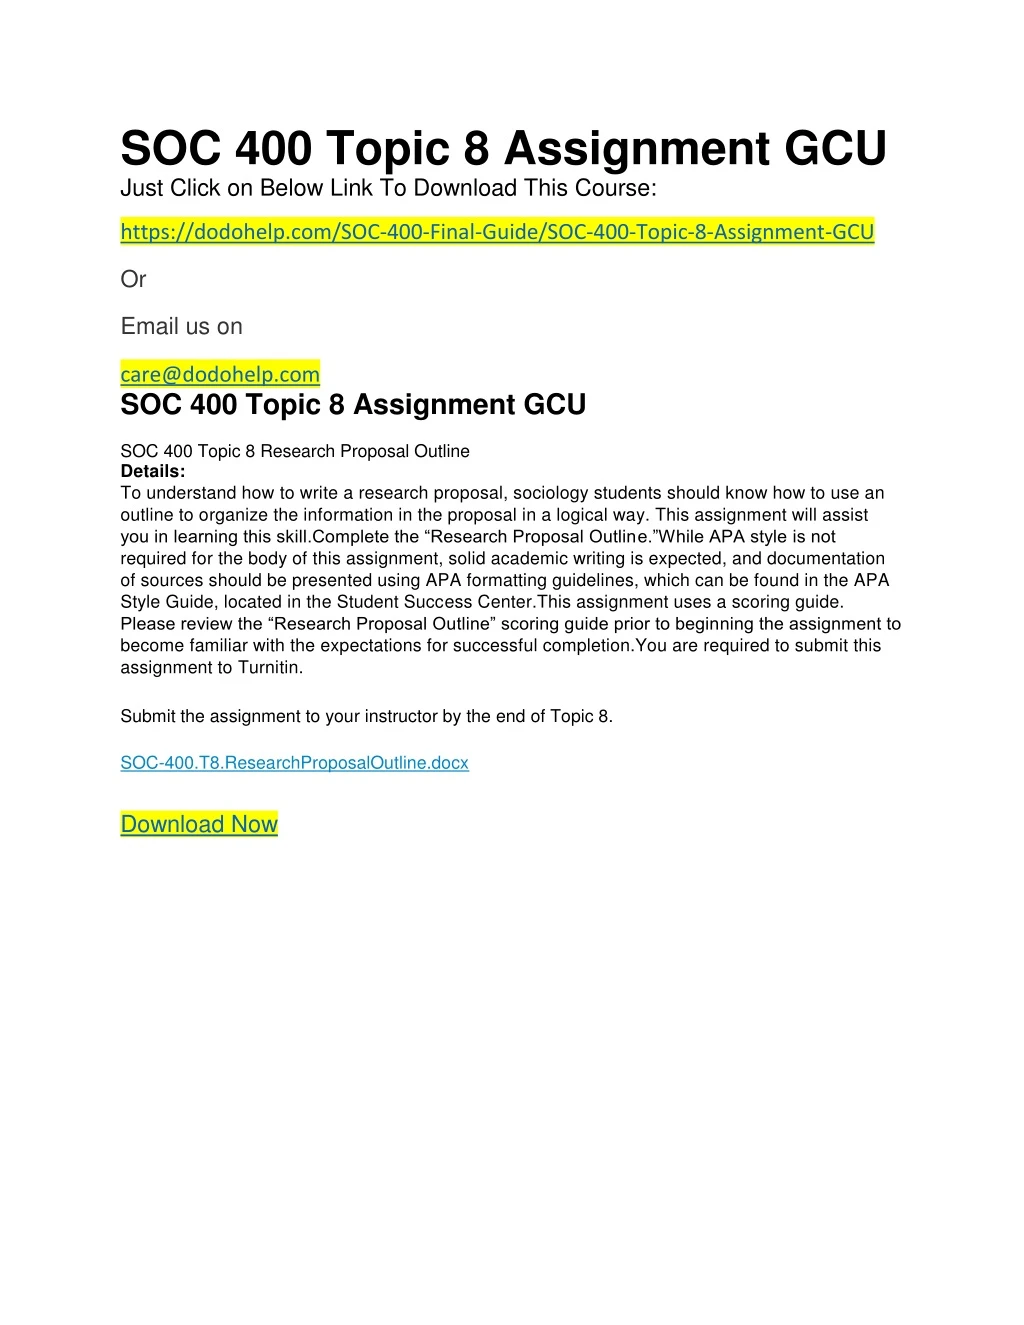 soc 400 topic 8 assignment gcu just click